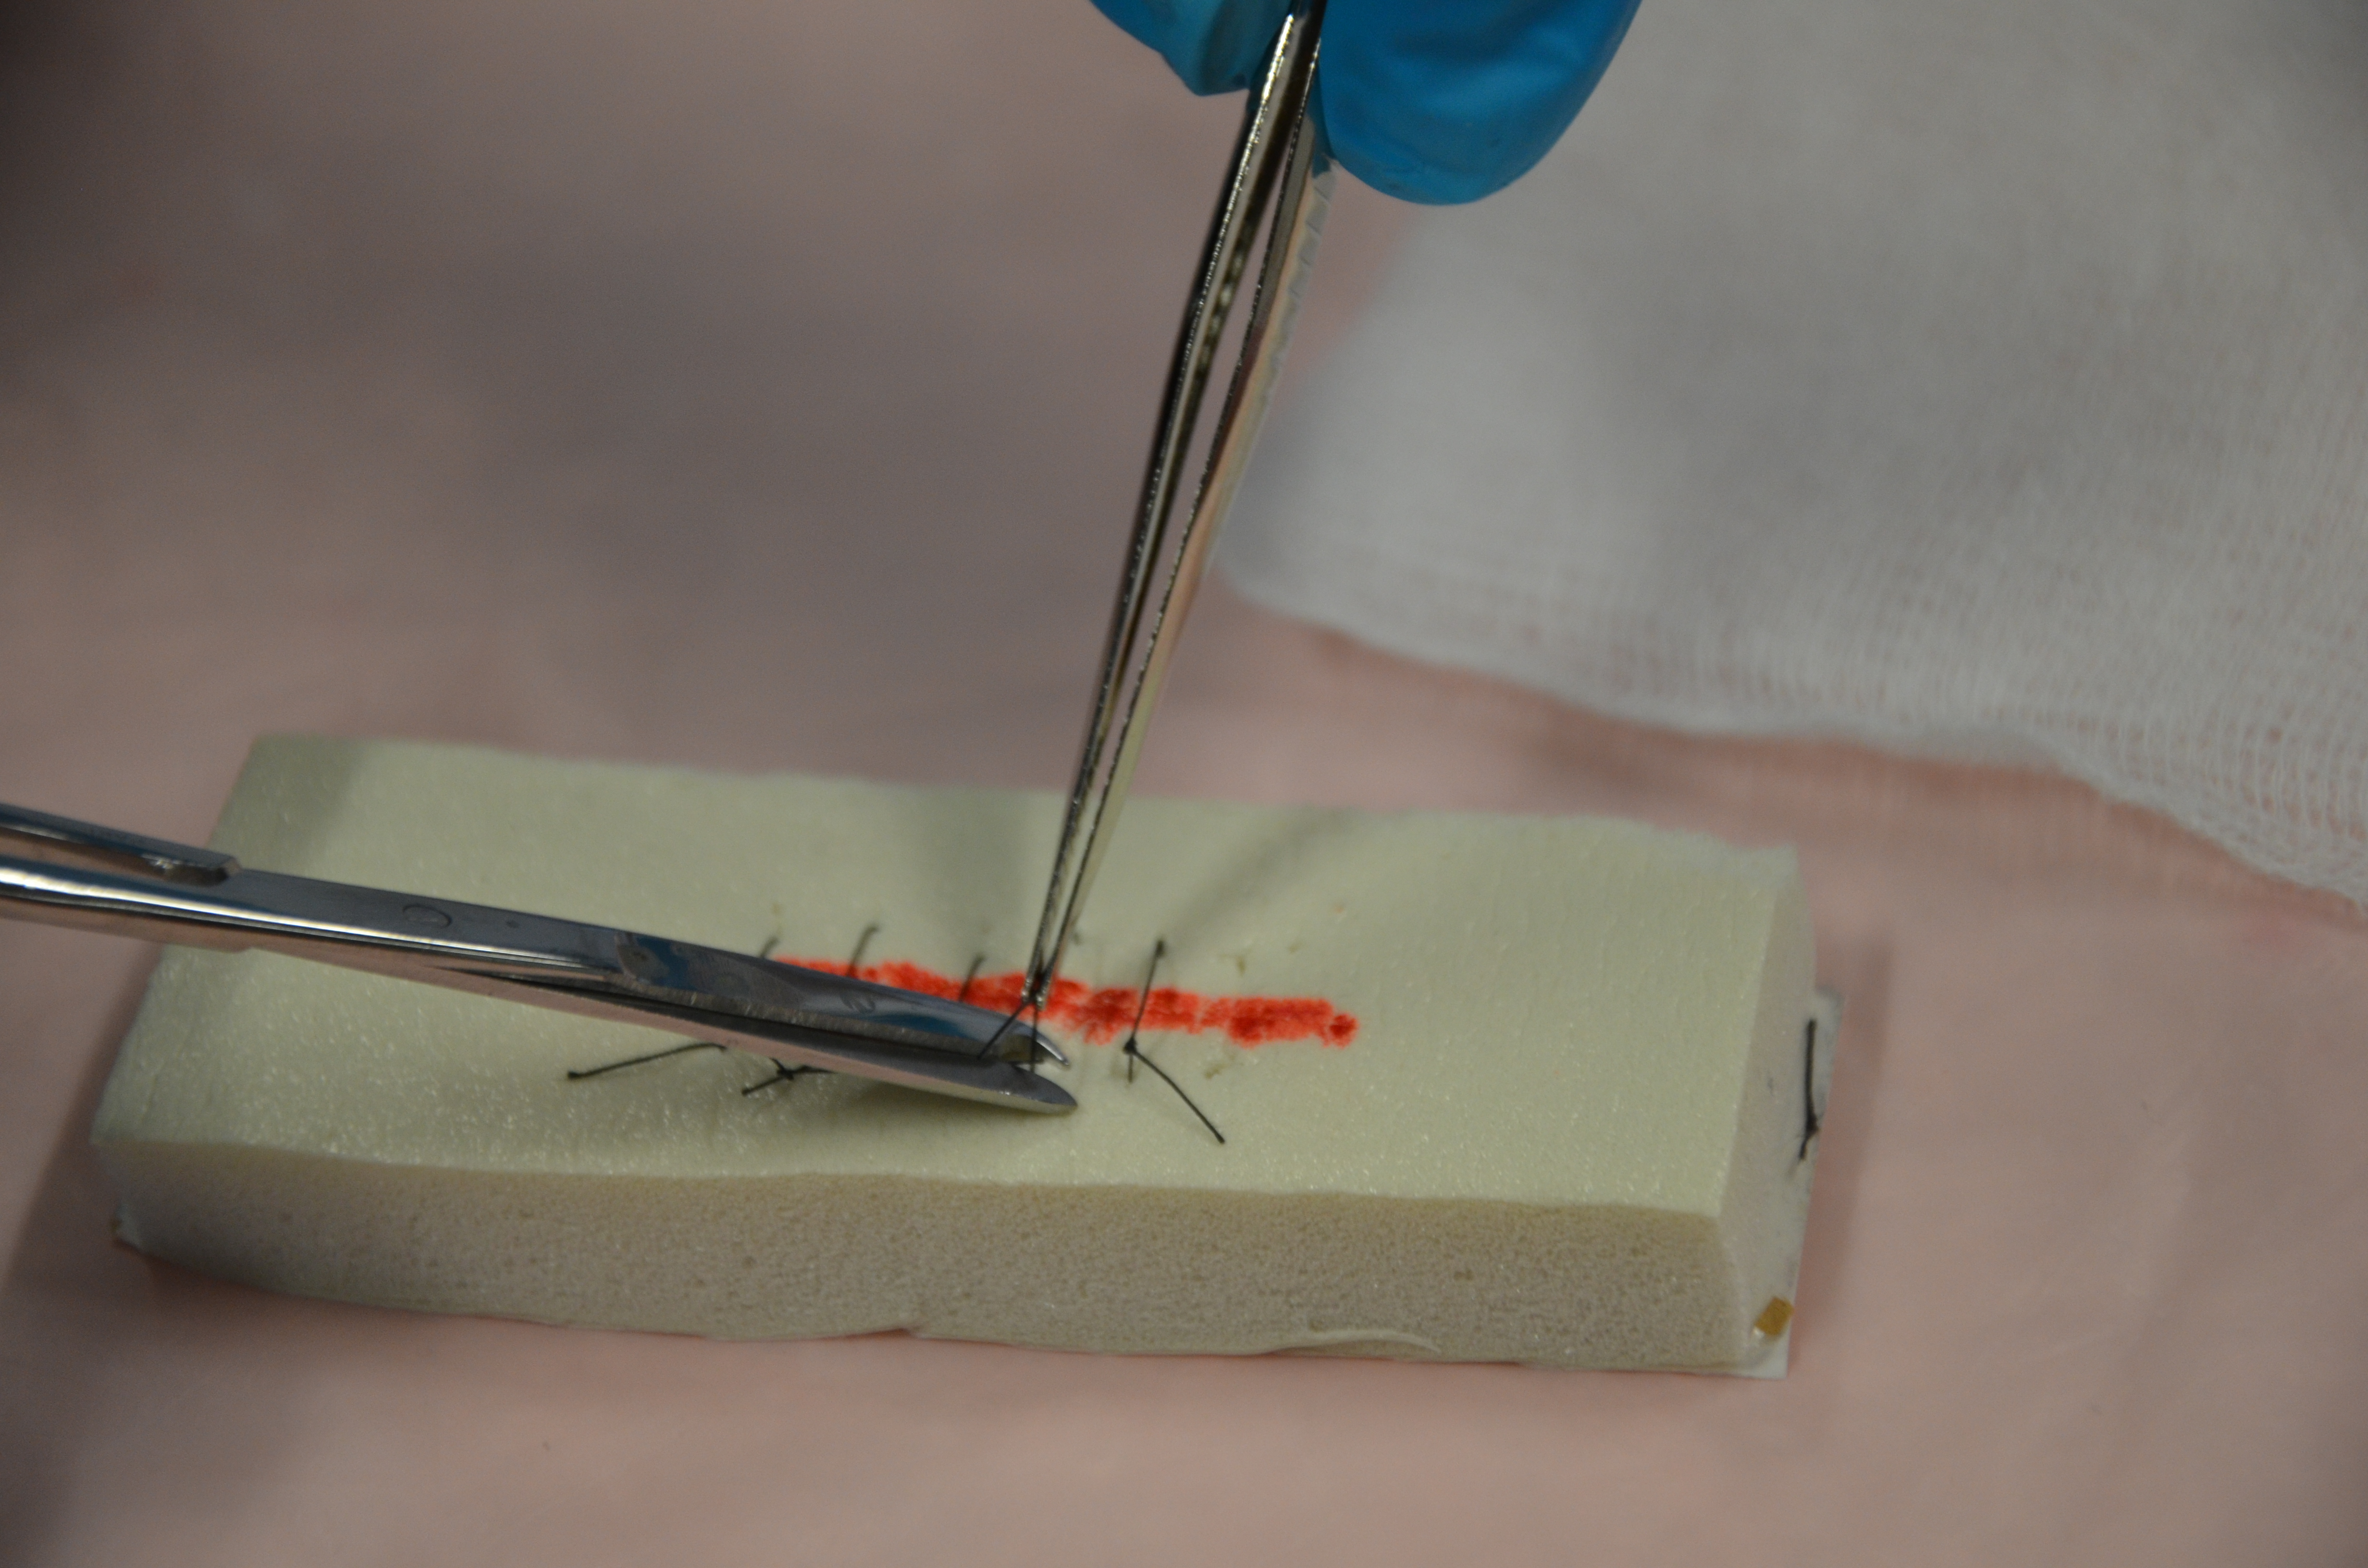 Techniques de sutures traditionnelles extériorisées : pull-out de